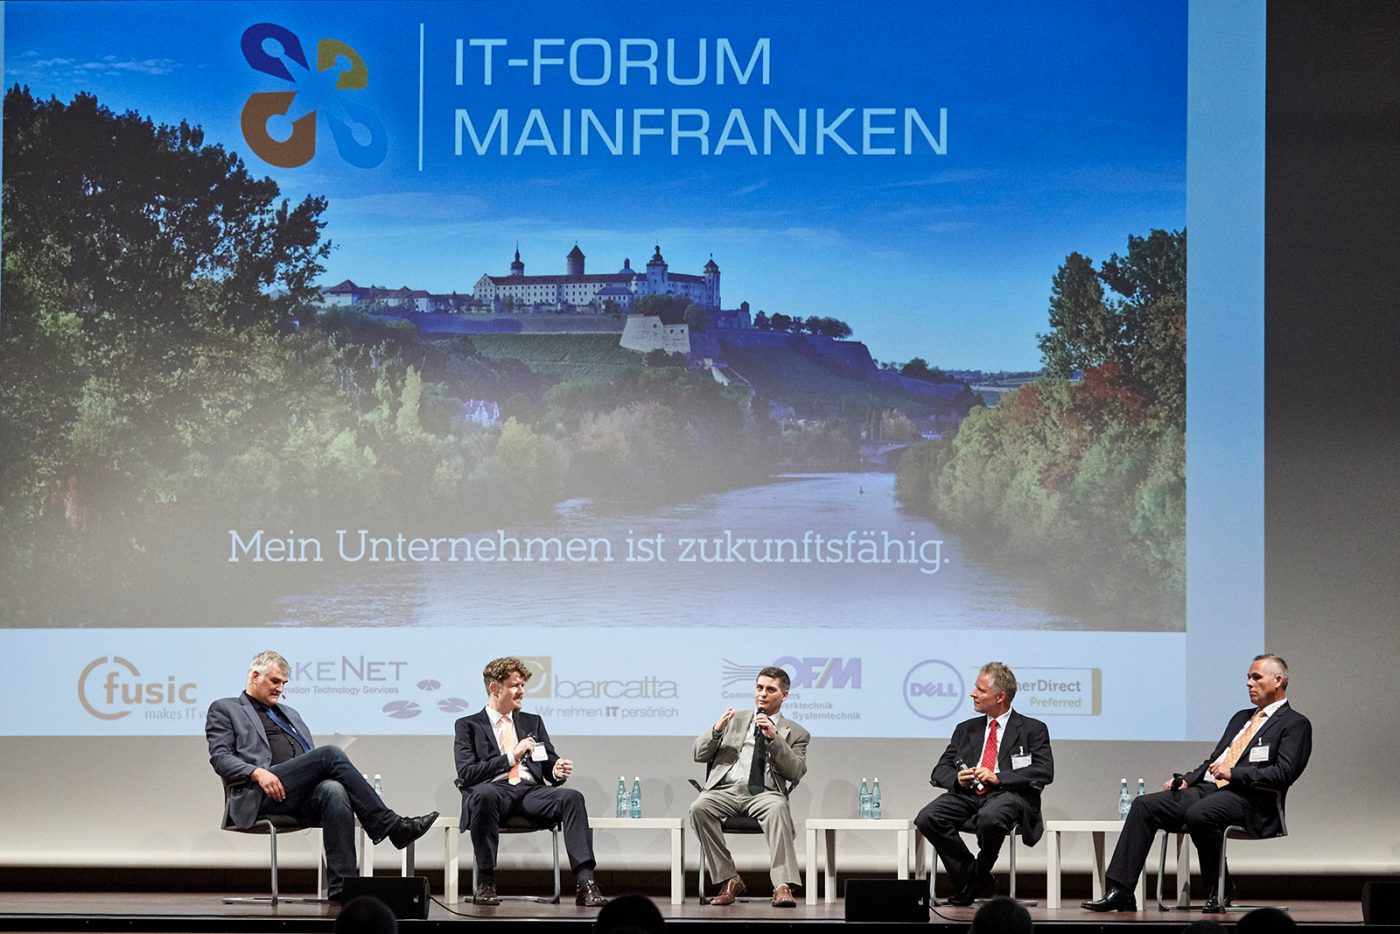 IT-Forum Mainfranken 2016